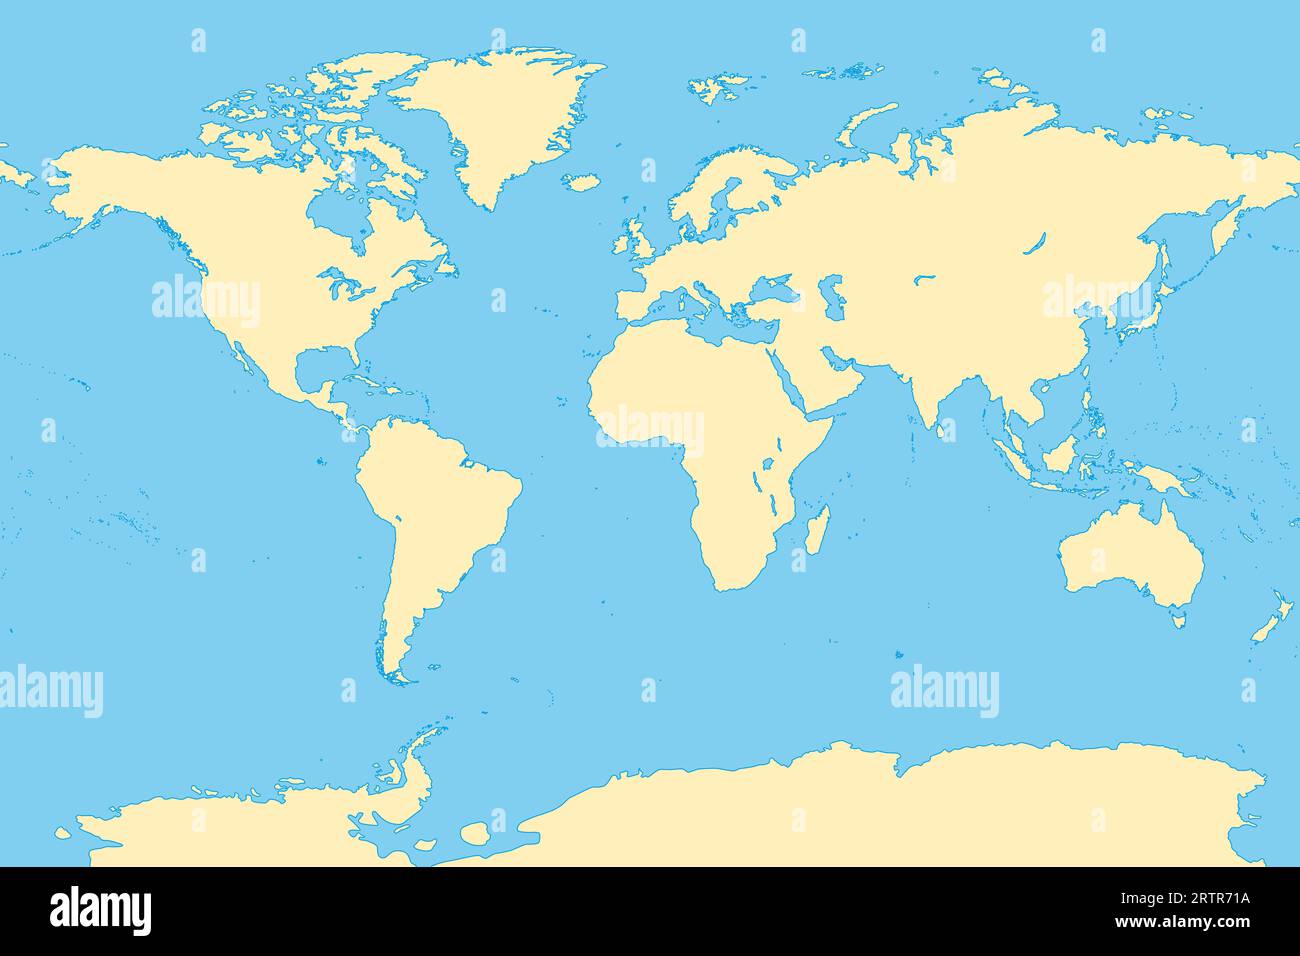 Die Welt, allgemeine Referenzkarte. Karte der Erdoberfläche mit den Landmassen aller Kontinente, mit den größten Seen, Ozeanen und Meeren. Stockfoto